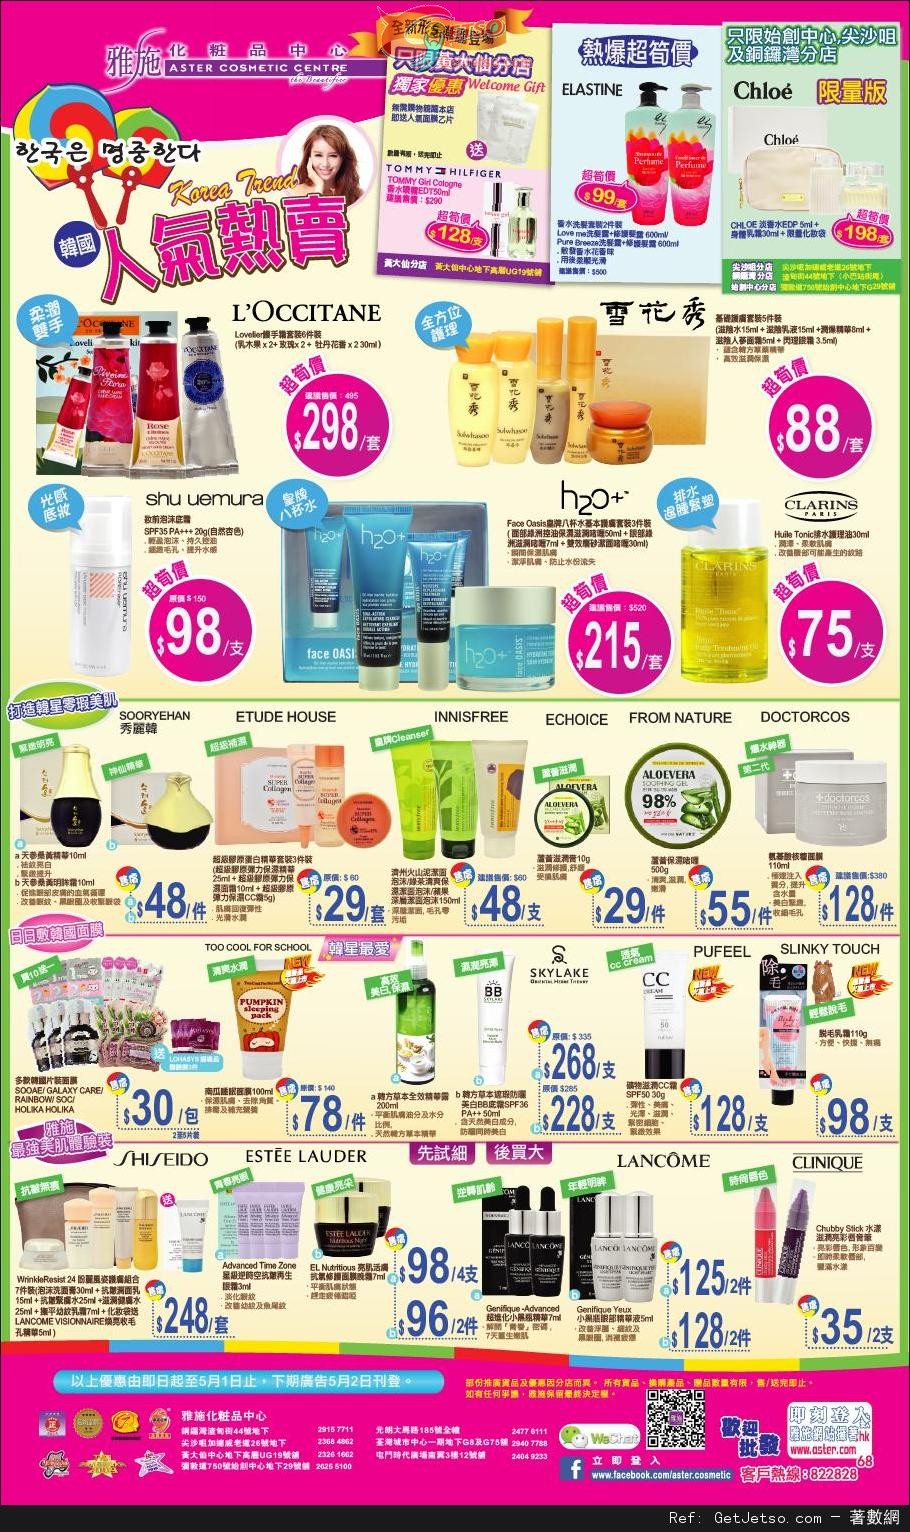 雅施化妝品中心韓國人氣熱賣護膚品購買優惠(至14年5月1日)圖片1